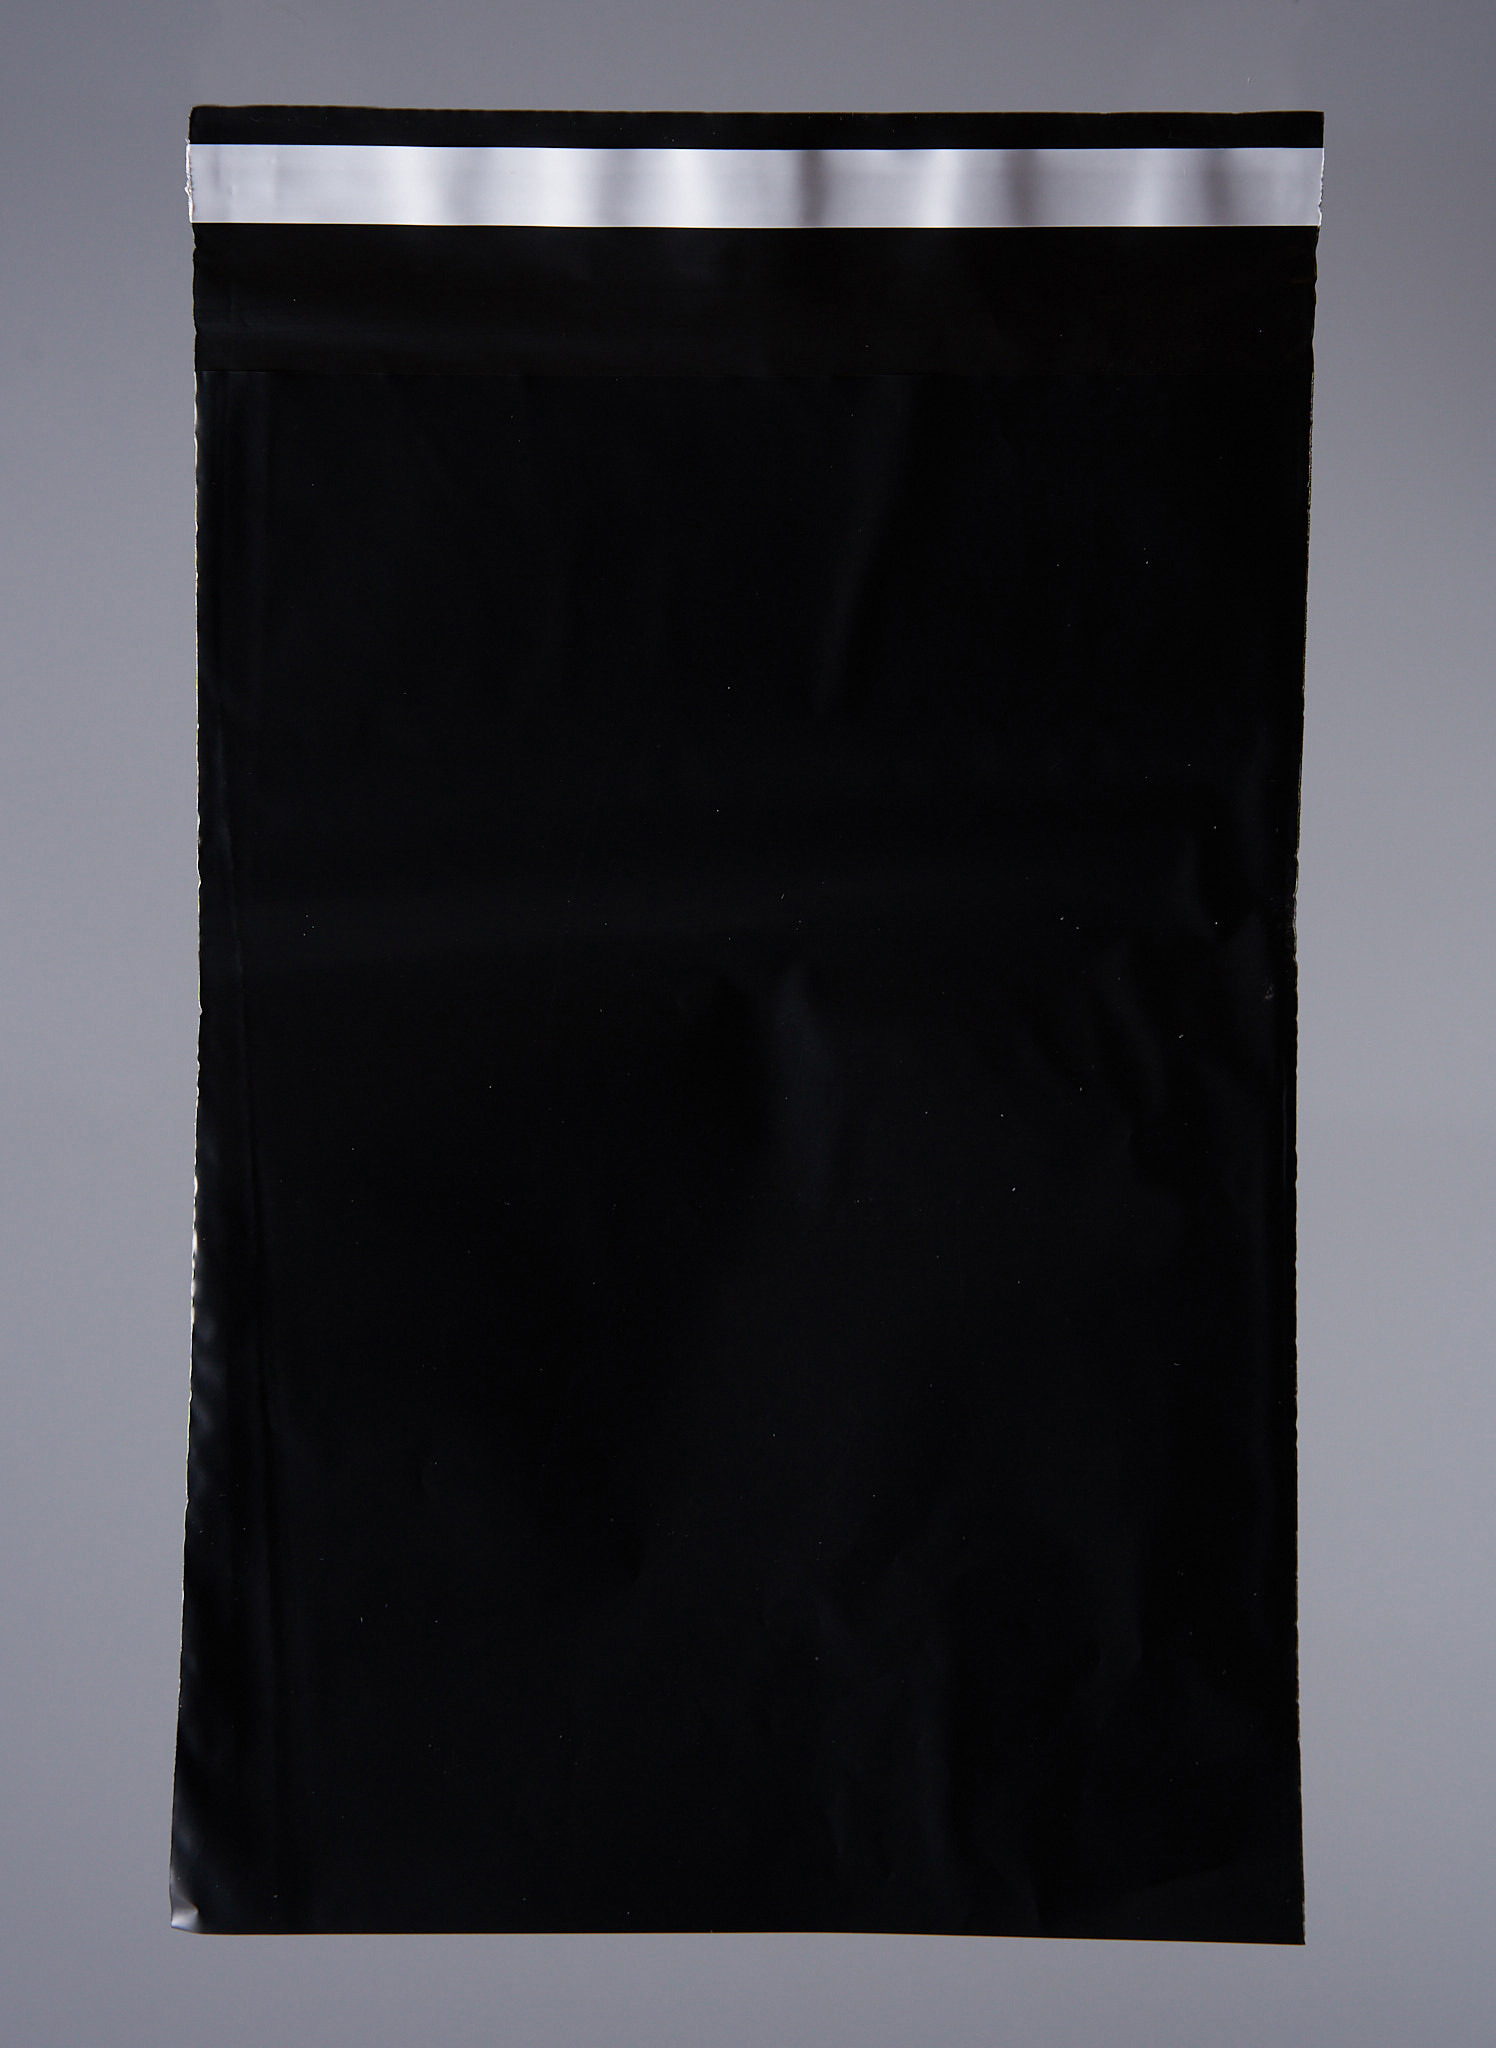 91017035 Пакет для компактного хранения 1000 шт 17x24 см полиэтилен цвет черный STLM-0443003 PACK INNOVATION